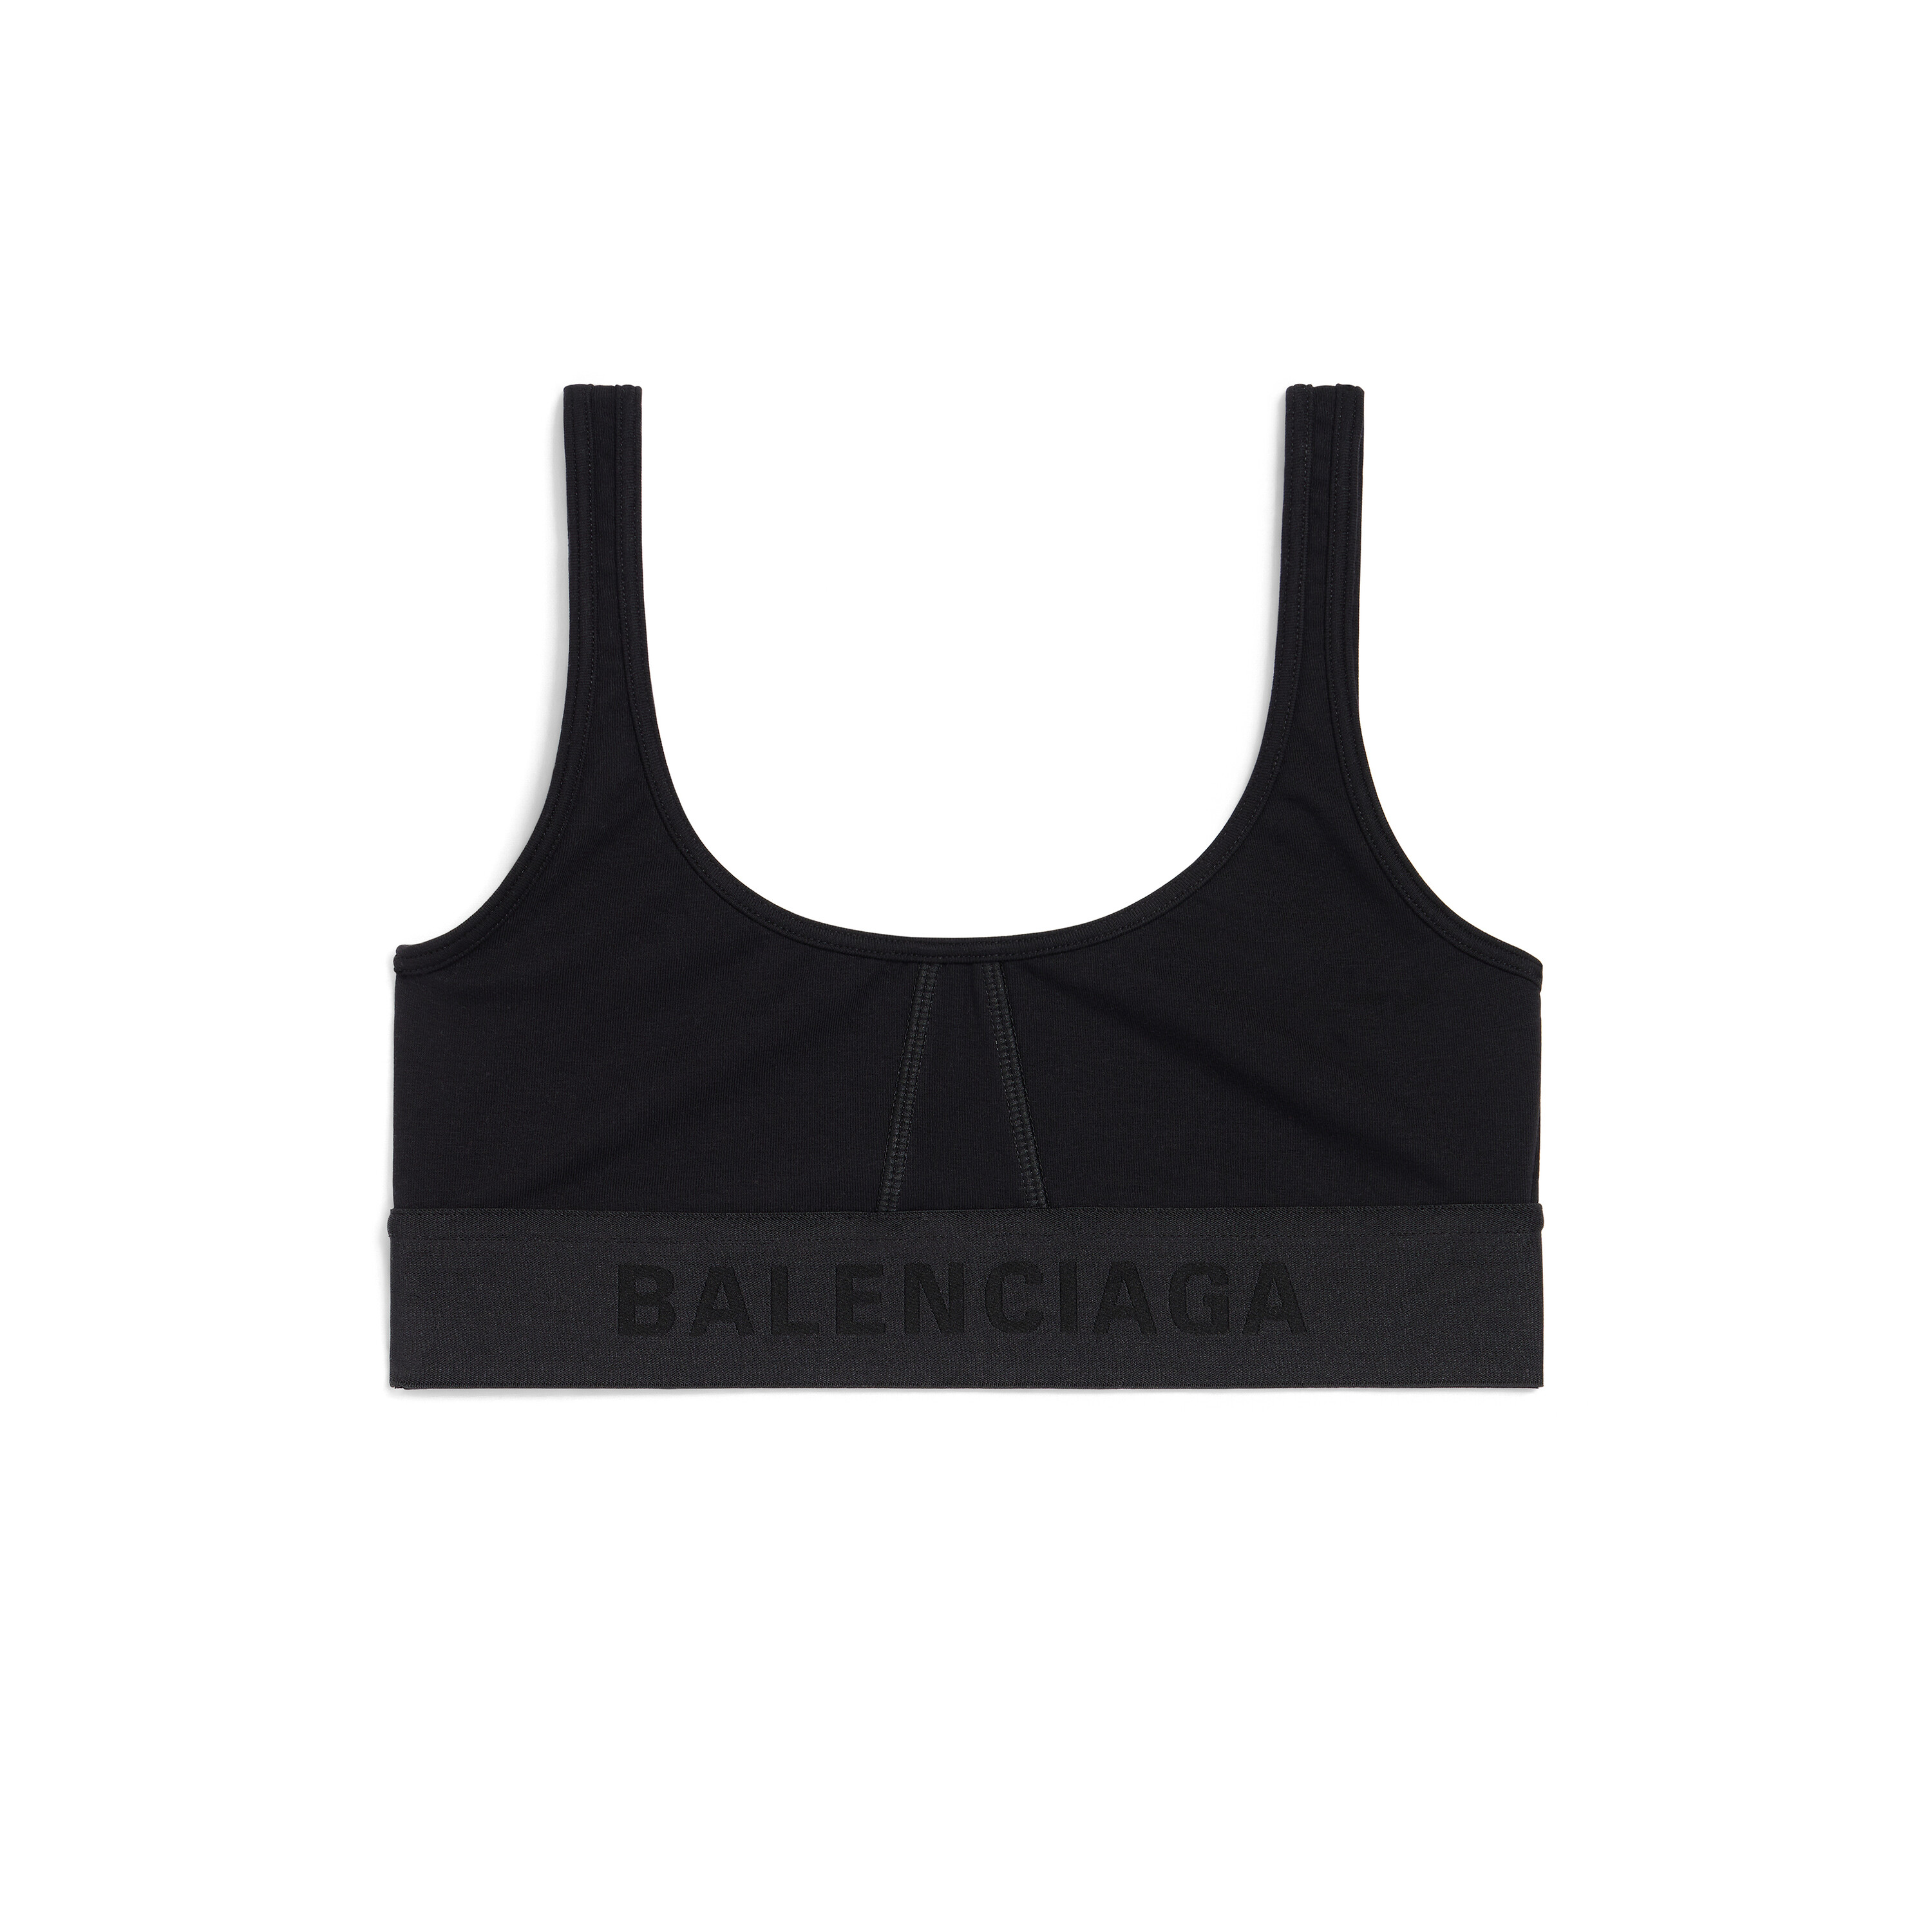 Buy Balenciaga Athletic Sports Bra 'Electric Blue' - 674745 4B5B6 0420